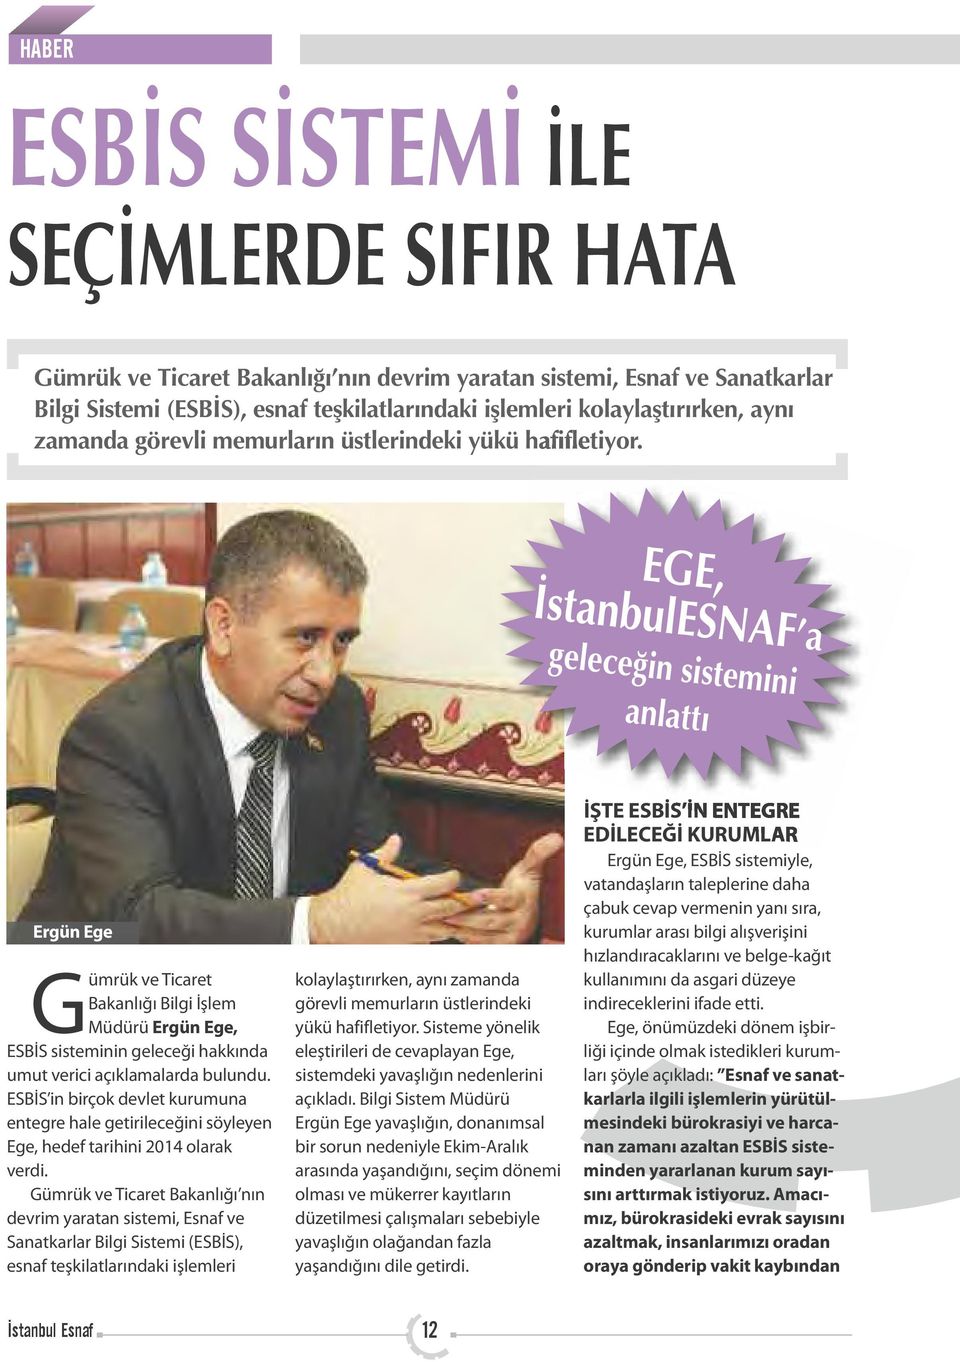 EGE, İstanbulESNAF a geleceğin sistemini anlattı Ergün Ege Gümrük ve Ticaret Bakanlığı Bilgi İşlem Müdürü Ergün Ege, ESBİS sisteminin geleceği hakkında umut verici açıklamalarda bulundu.